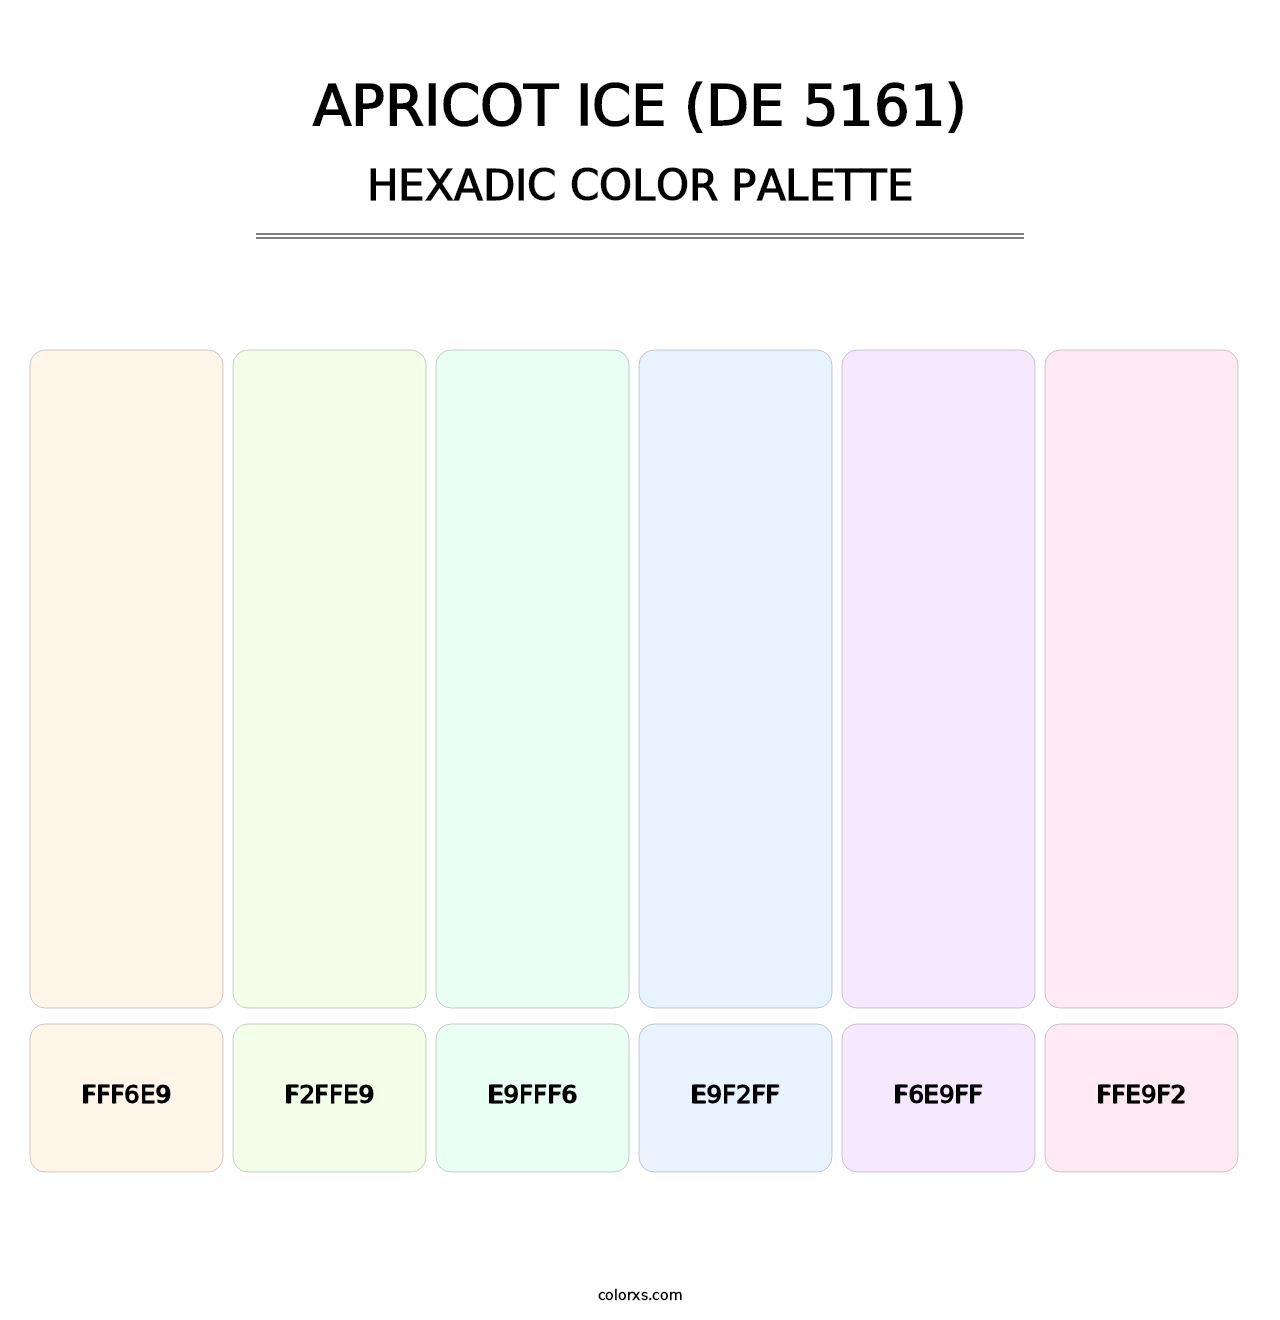 Apricot Ice (DE 5161) - Hexadic Color Palette